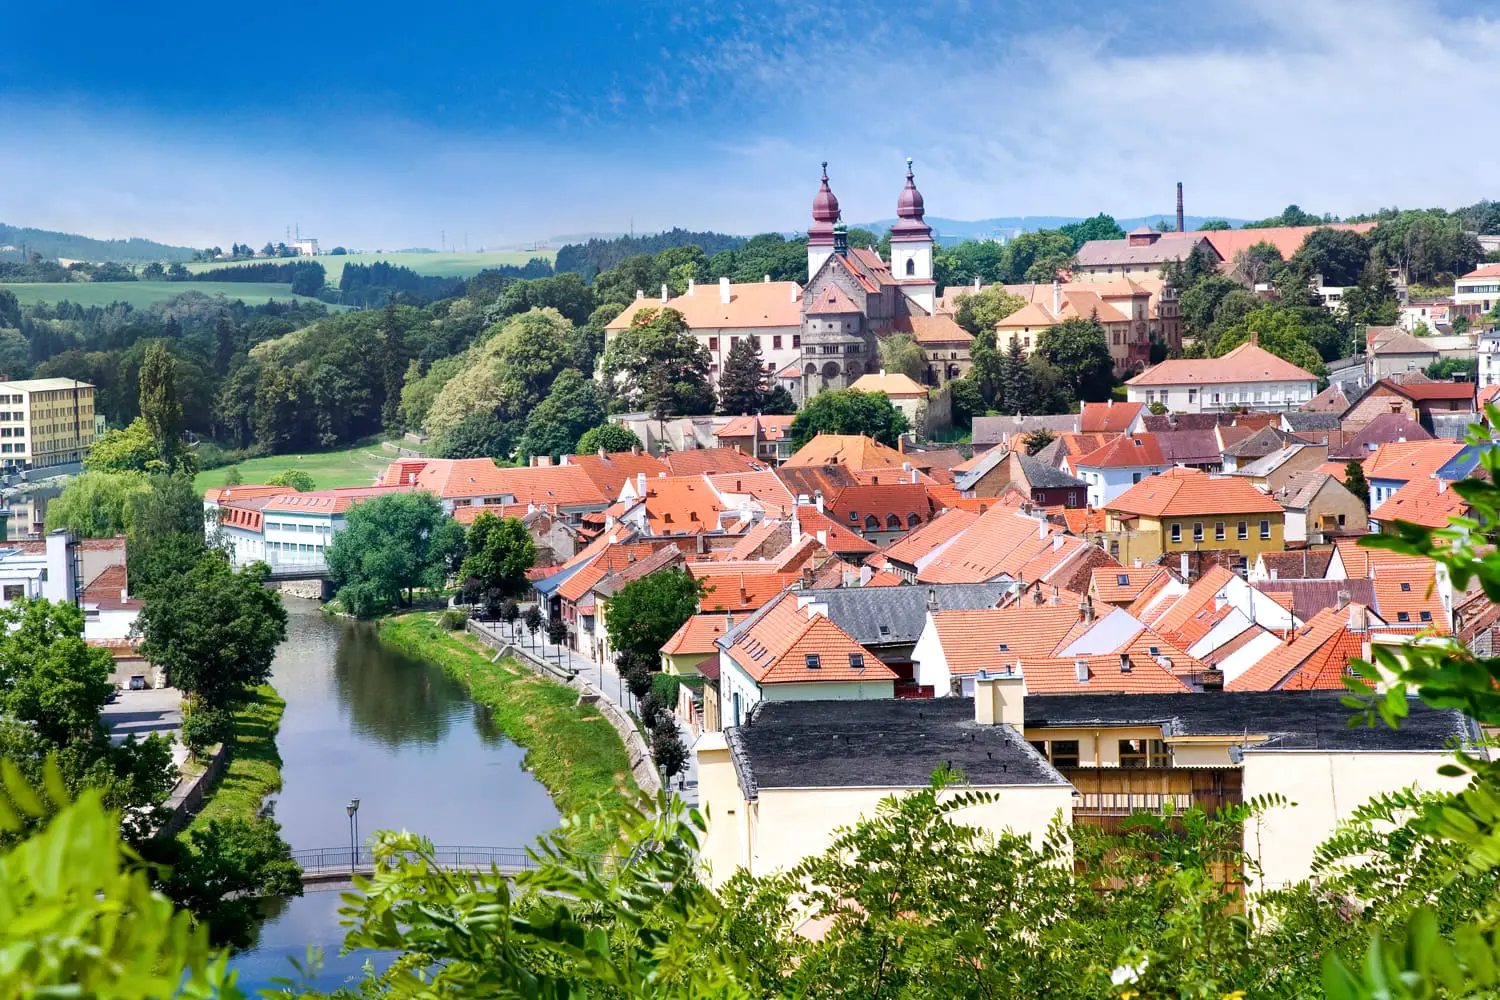 ρομανική βασιλική και μοναστήρι του Αγίου Προκοπίου, εβραϊκή πόλη Trebic (UNESCO, ο παλαιότερος μεσαίωνας οικισμός εβραϊκής κοινότητας στην Κεντρική Ευρώπη), Μοραβία, Τσεχική Δημοκρατία, Ευρώπη